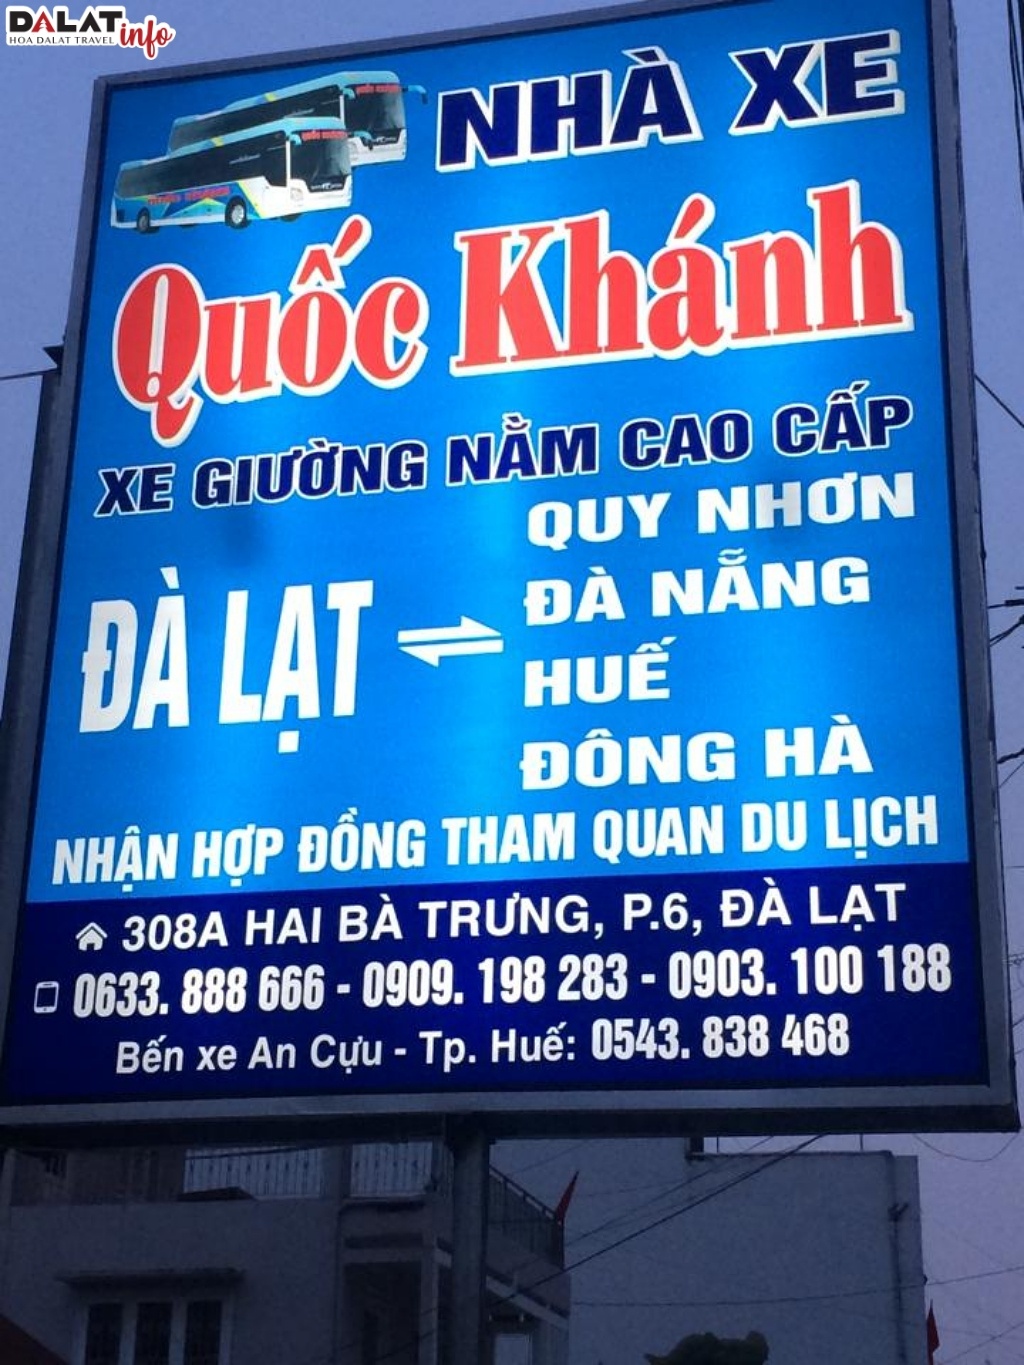 Xe Quốc Khánh